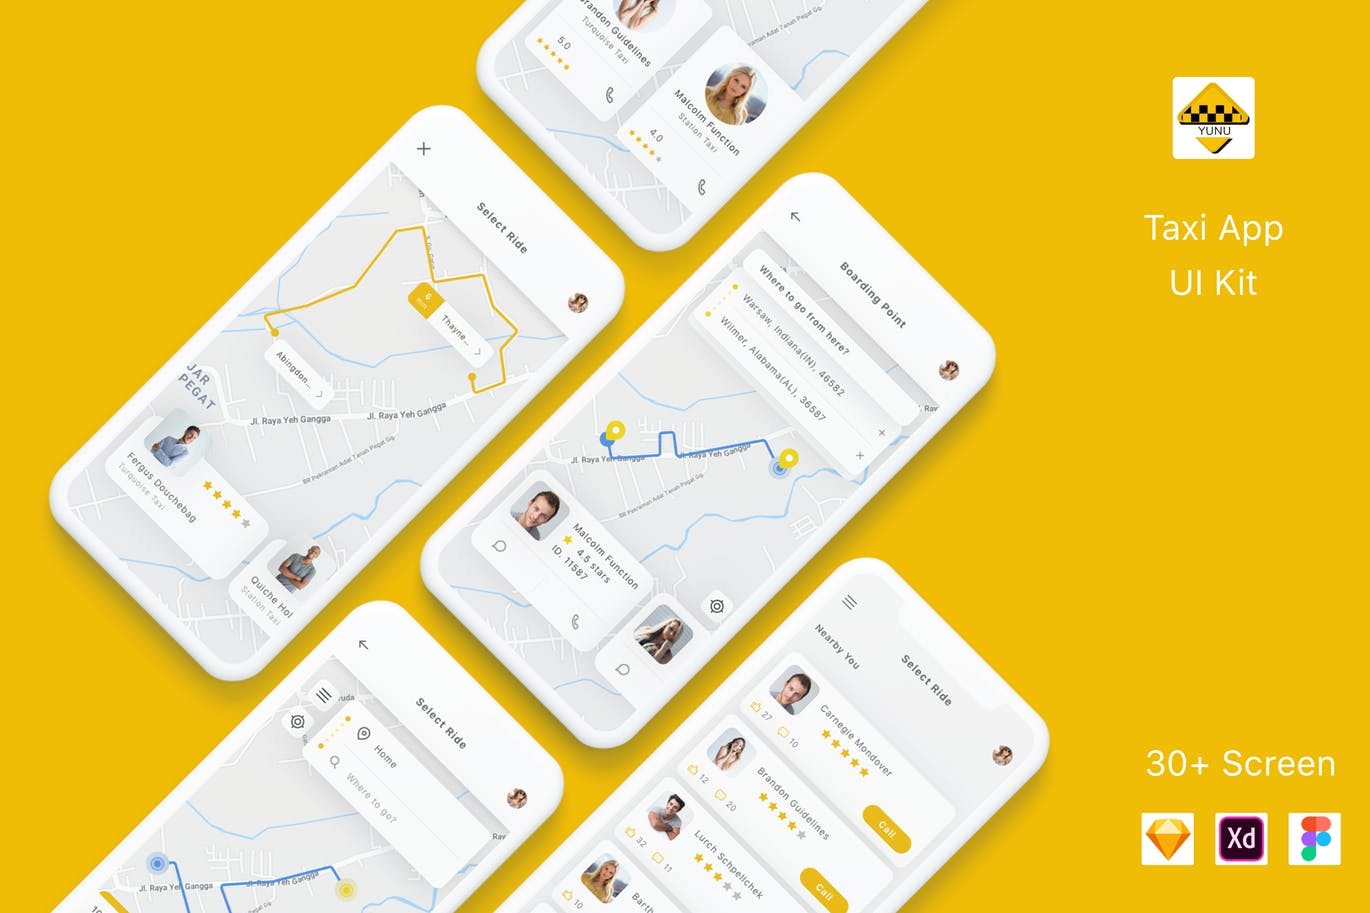 出租车预约平台APP交互界面设计第一素材精选套件 Yunu – Taxi App UI Kit插图